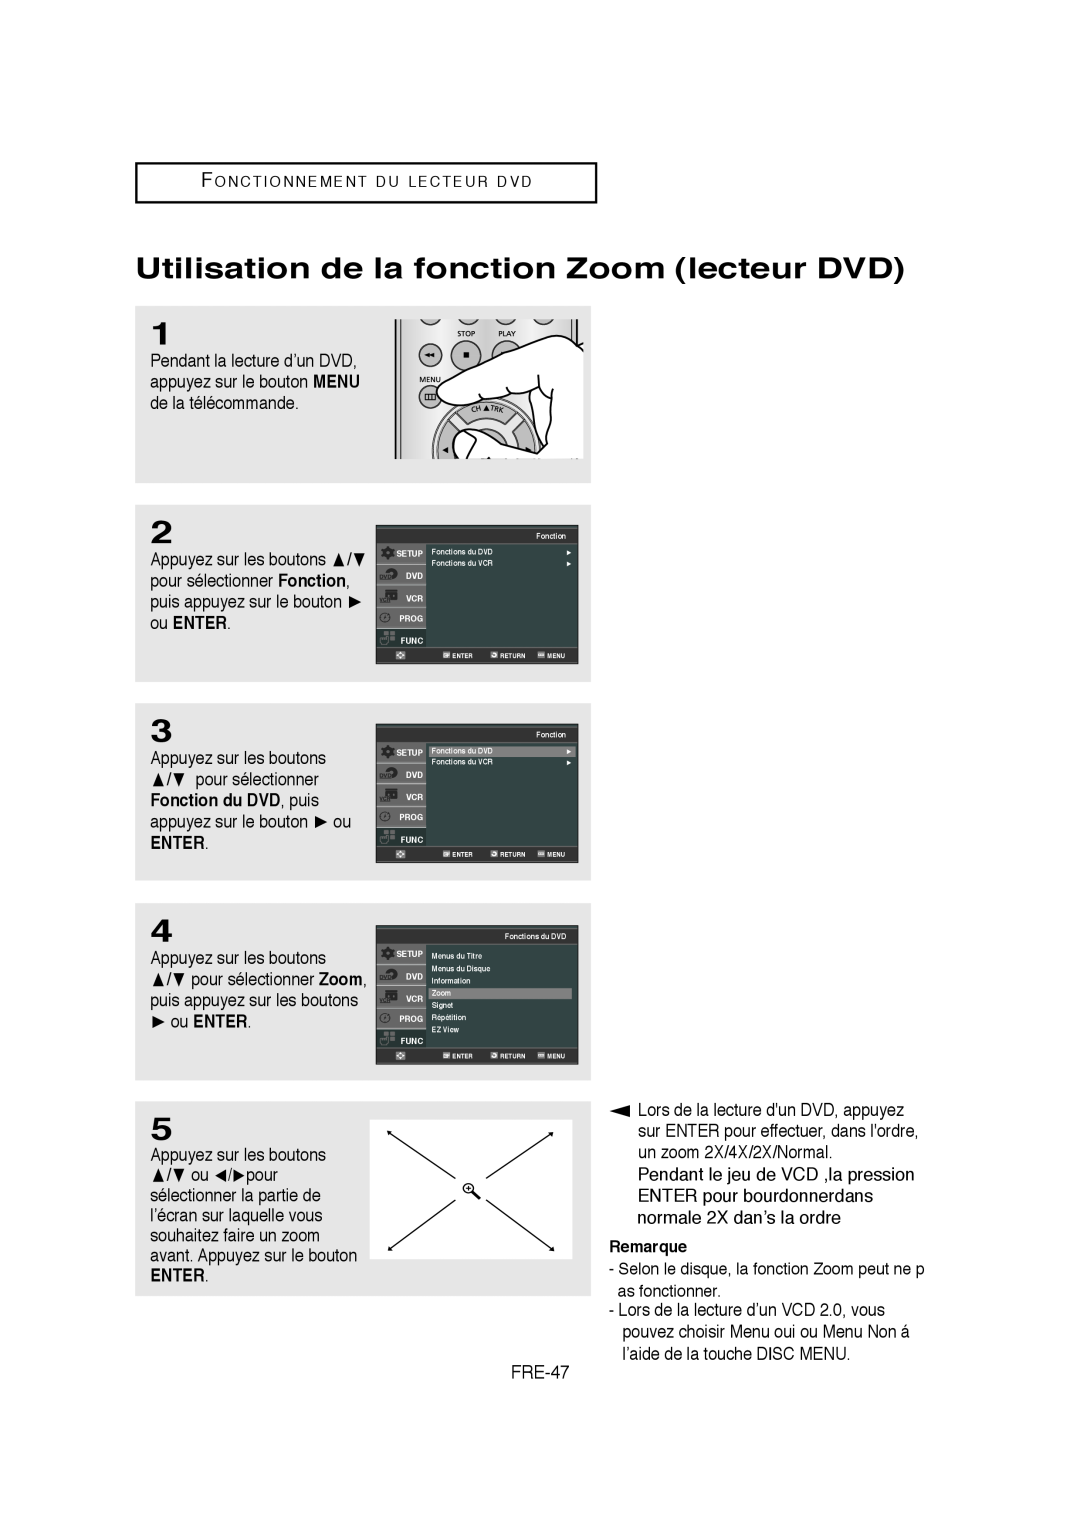 Samsung 20070205090323359, V6700-XAC, AK68-01304A Utilisation de la fonction Zoom lecteur DVD, Enter, ou ENTER, Remarque 